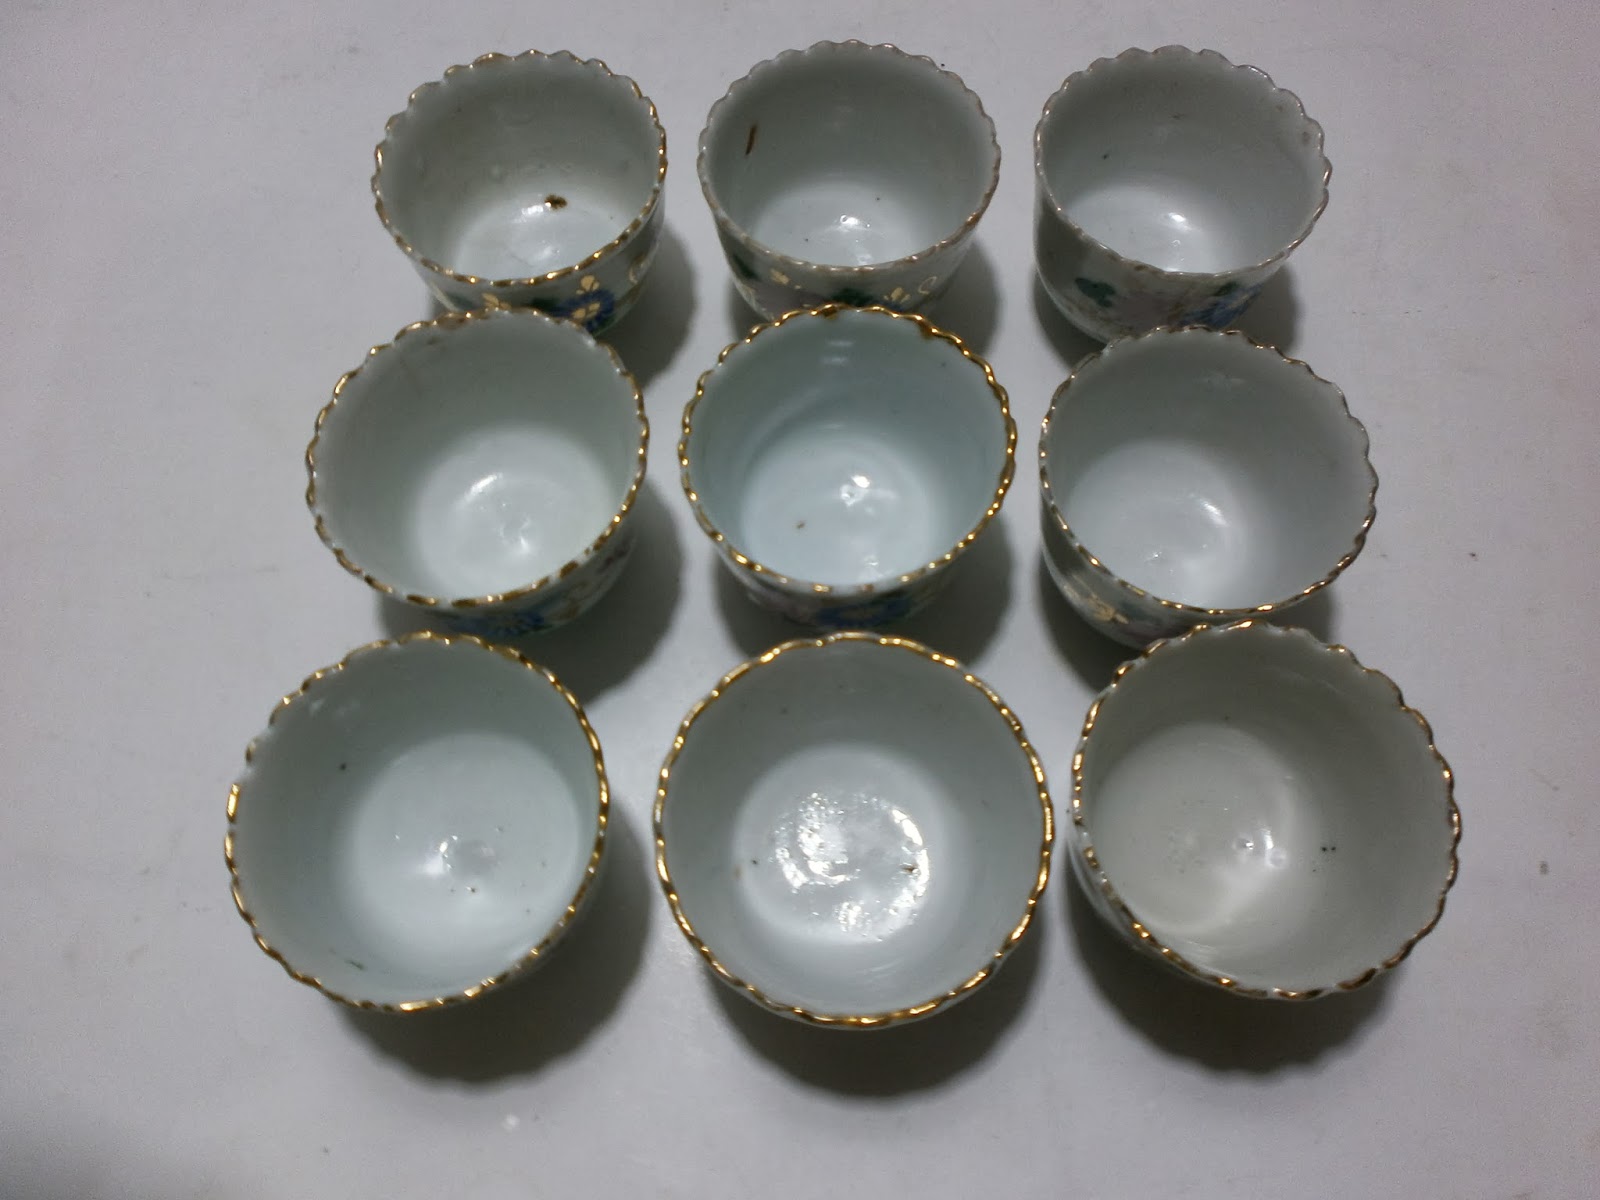 Spesial 35 Keramik Dapur Motif Buah 